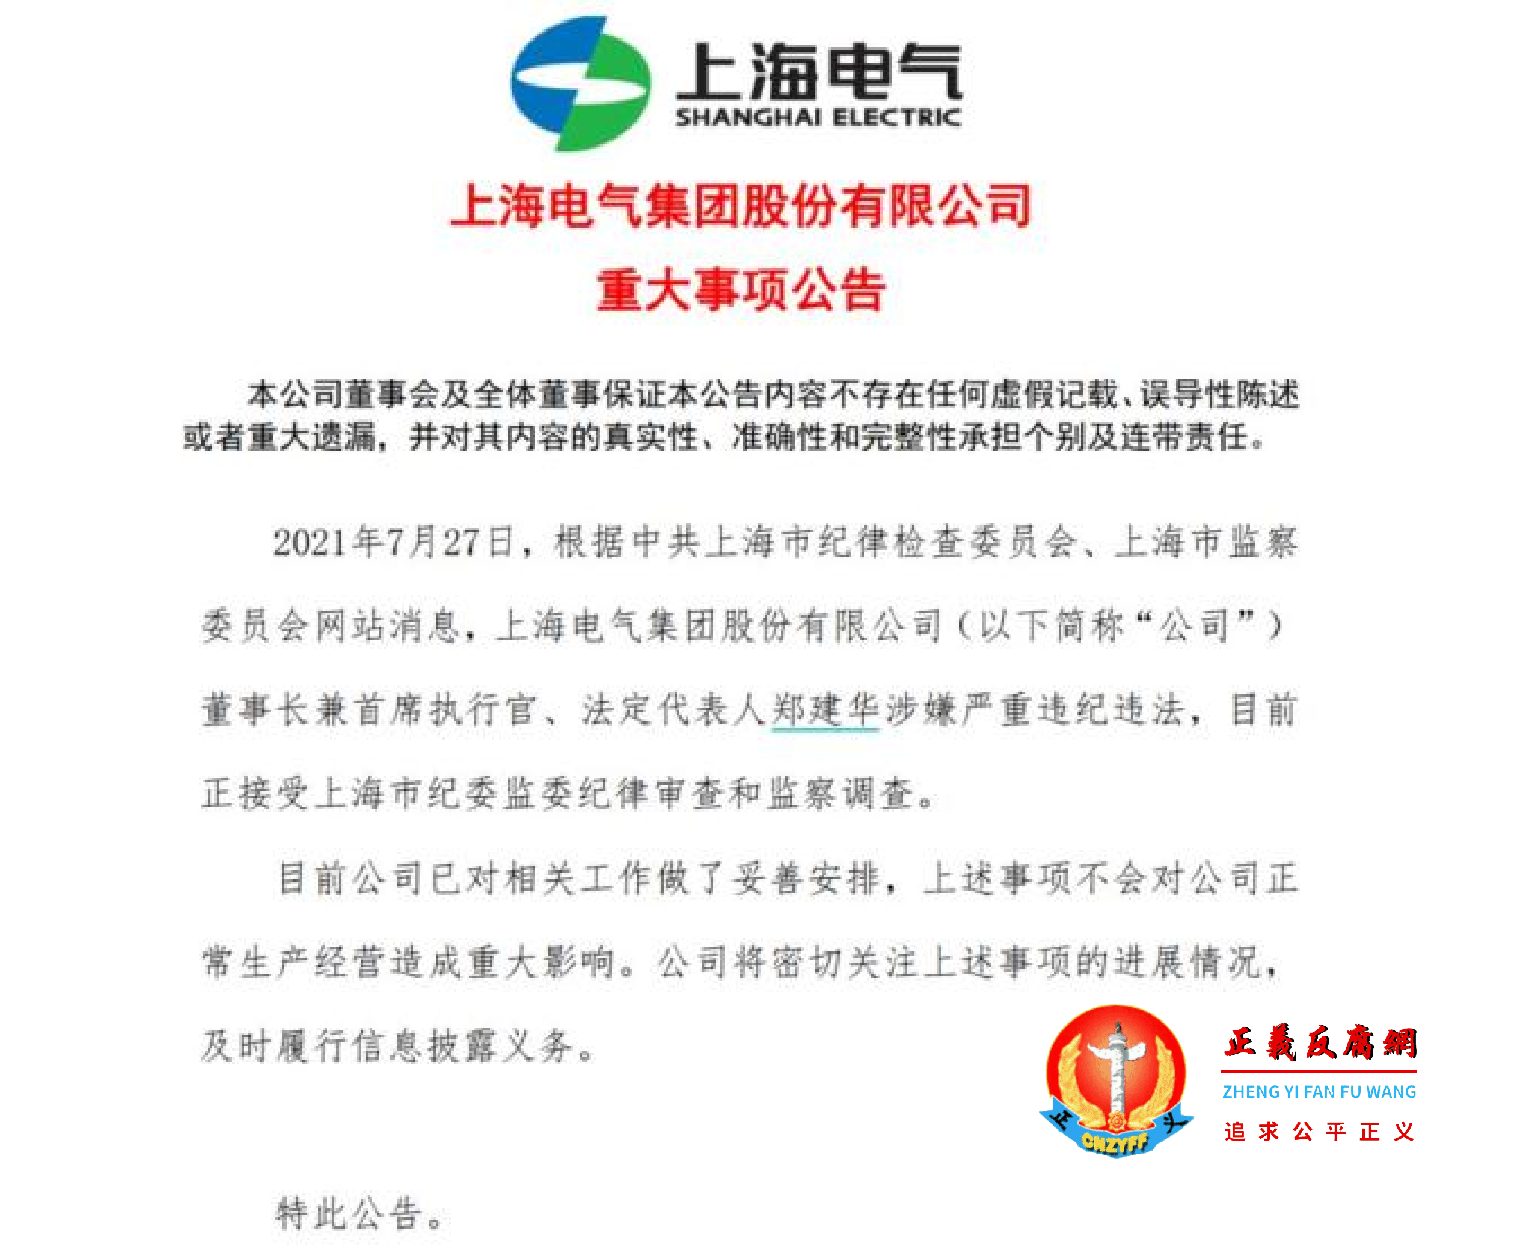 2021年7月27日上海电气集团股份有限公司回应重大事项公告.png